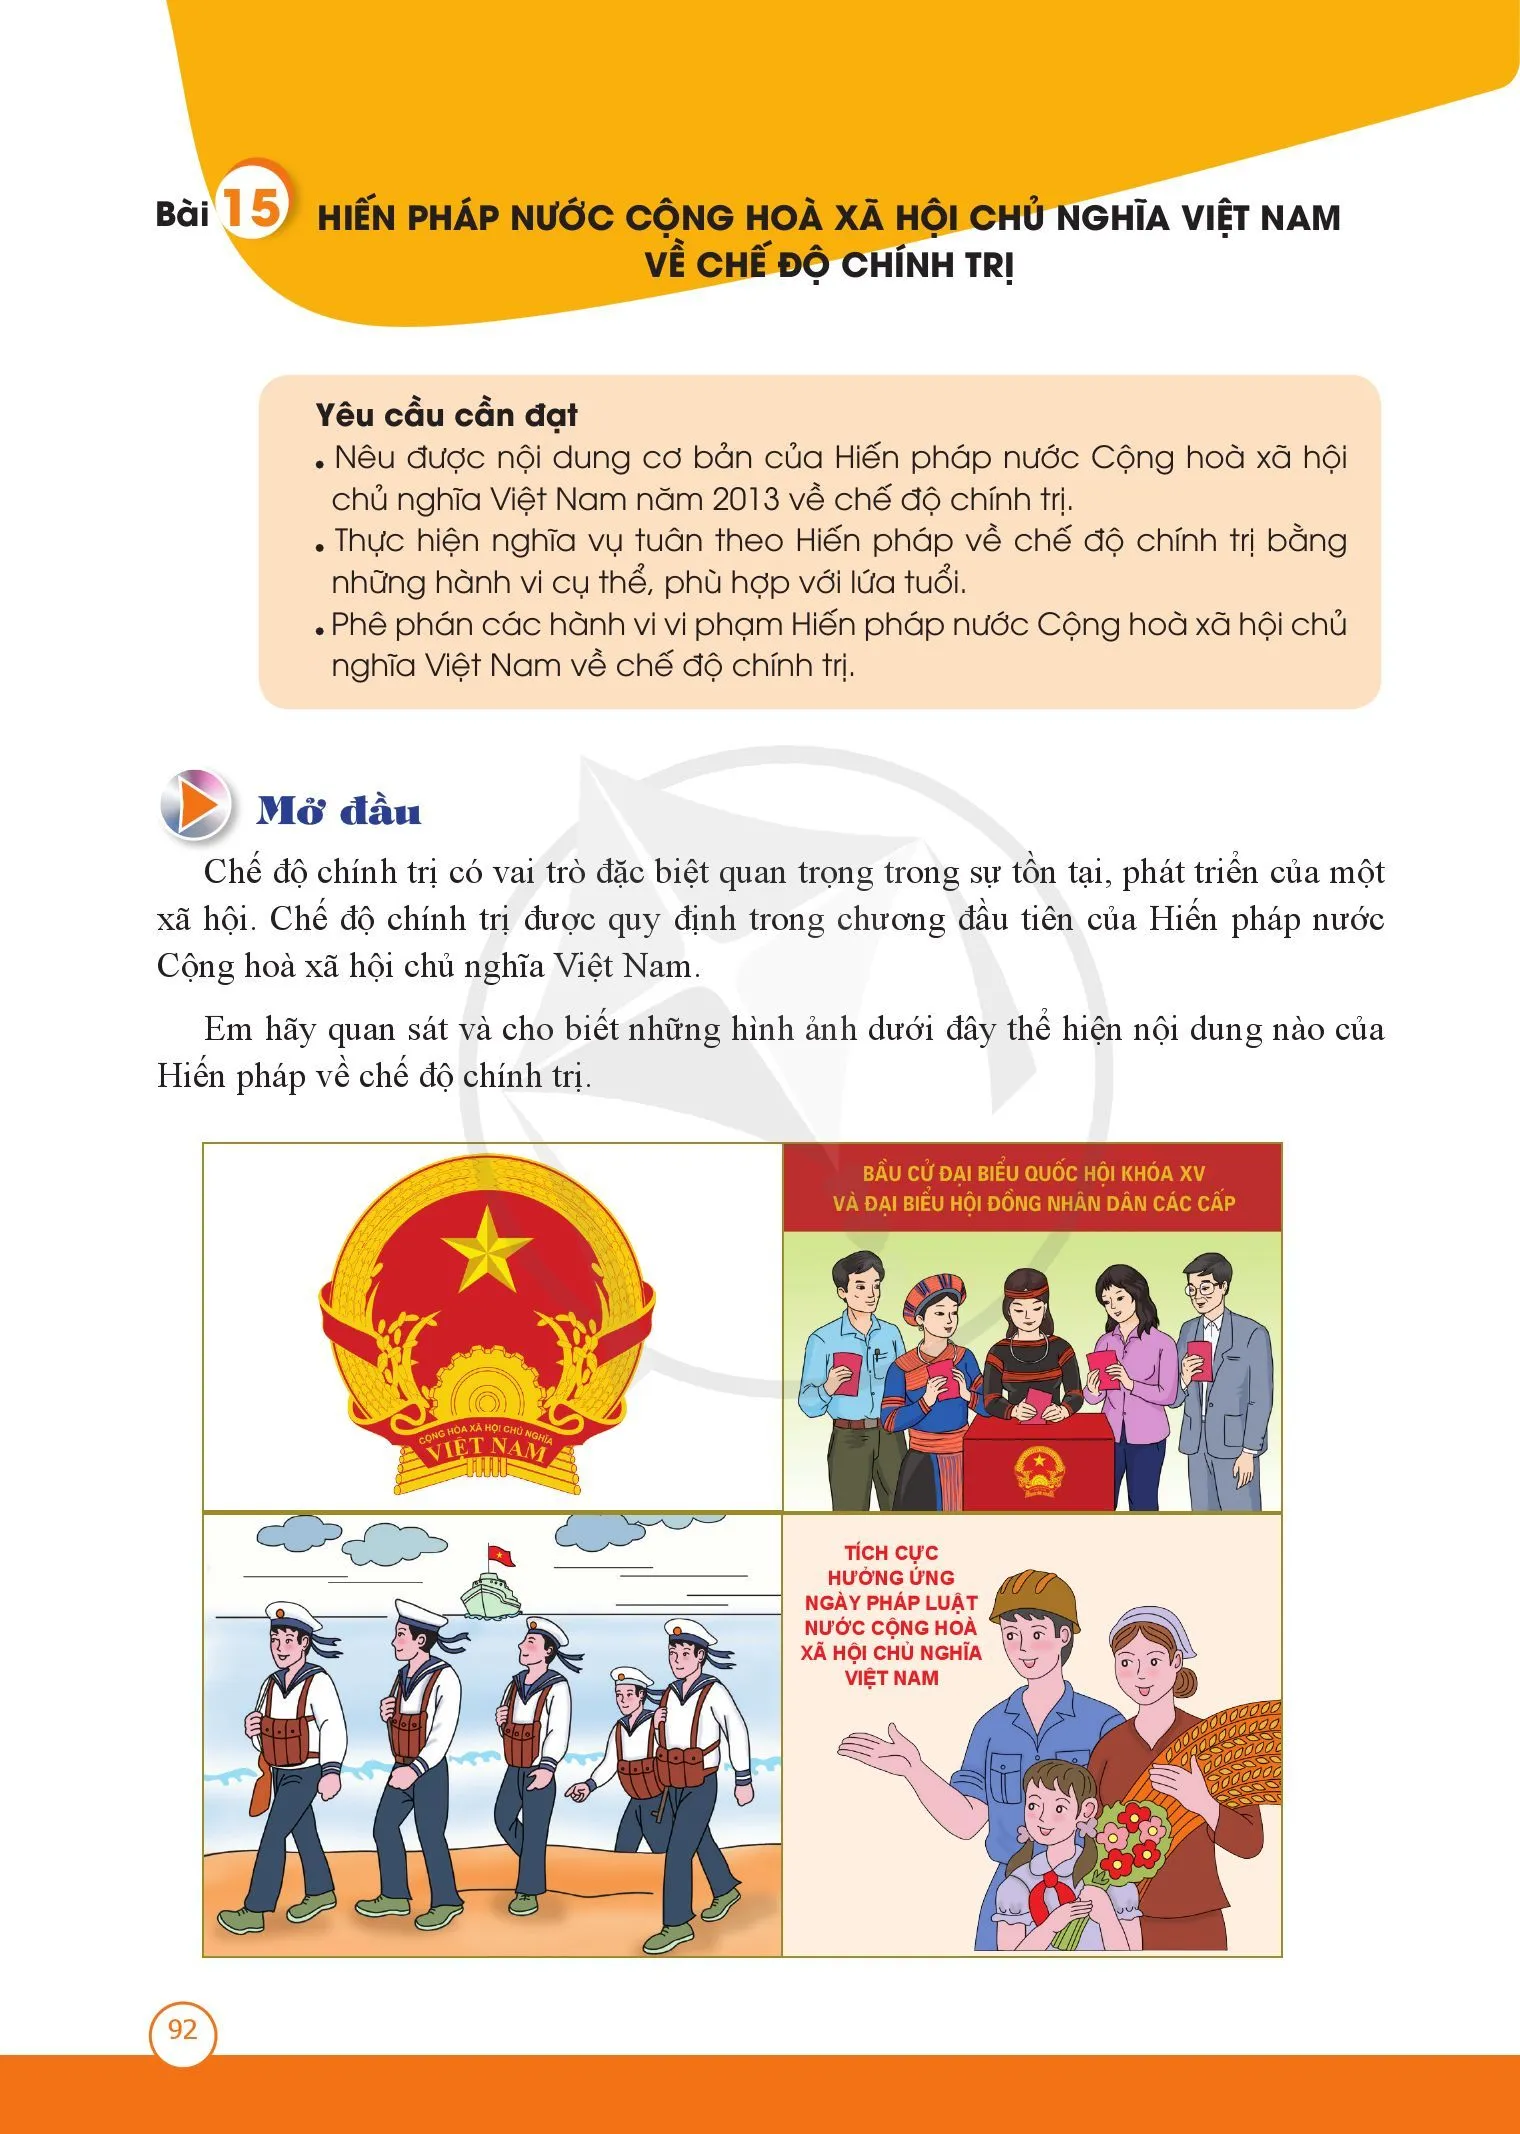 Bài 14. Hiến pháp nước Cộng hoà xã hội chủ nghĩa Việt Nam